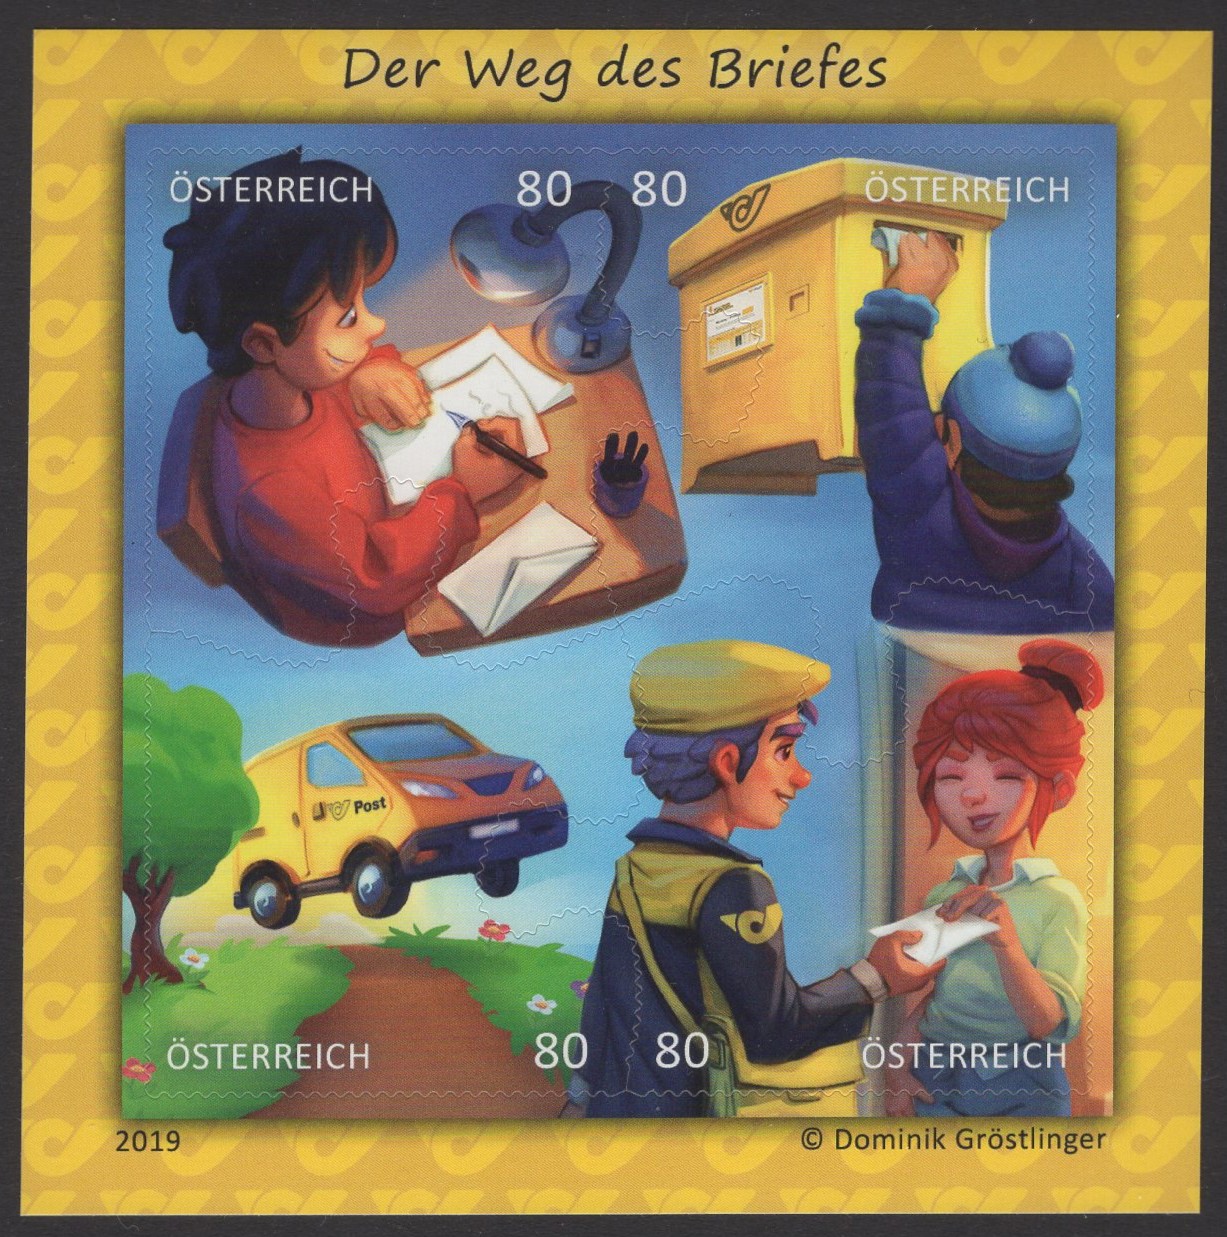 Österreich - Block 103 - postfrisch - Comicmarke Puzzle VVII der Weg des Briefes